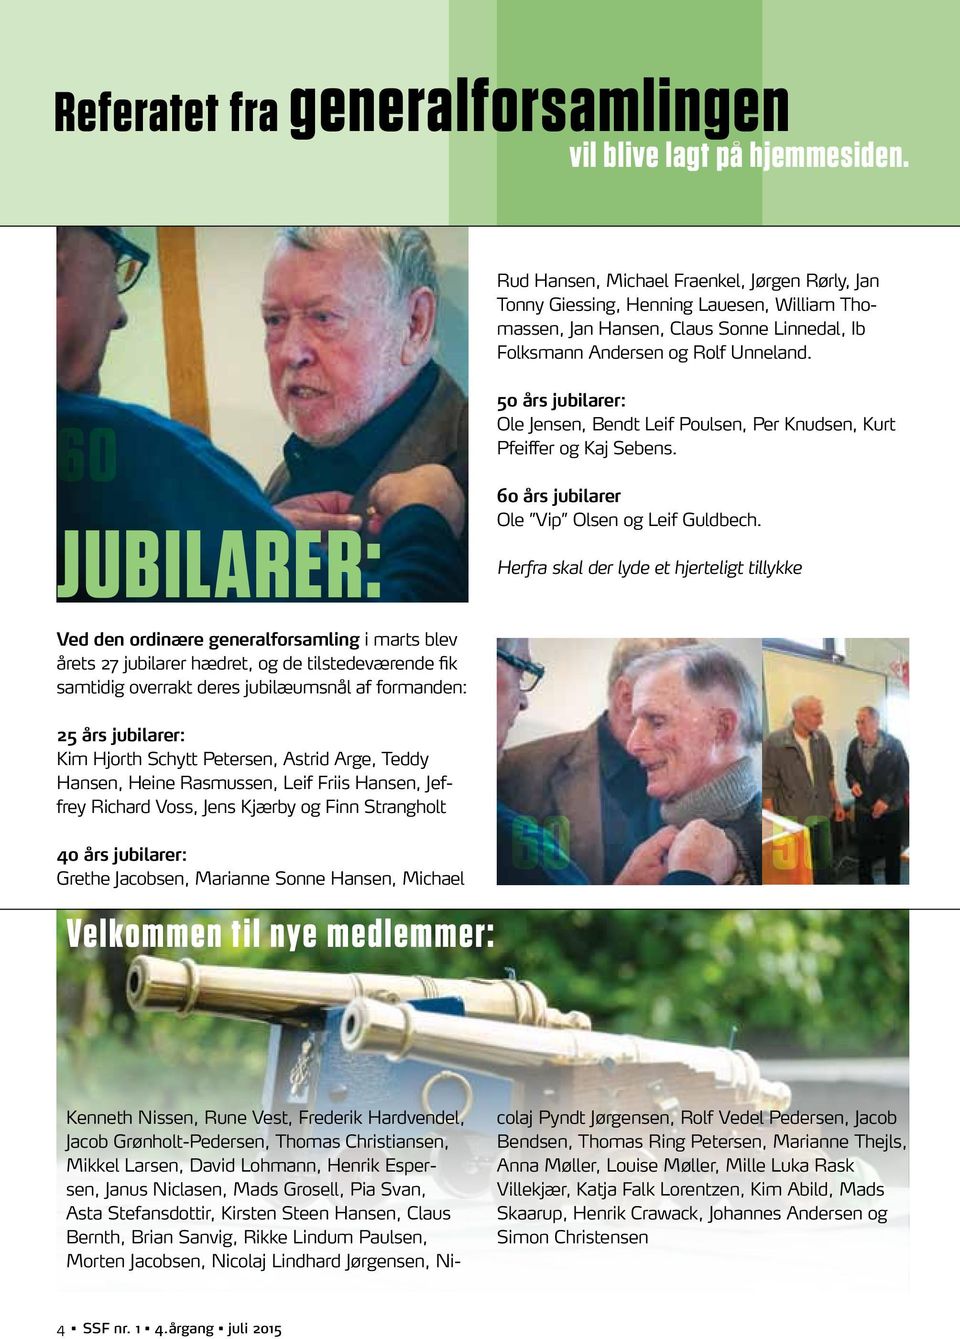 60 JUBILARER: 50 års jubilarer: Ole Jensen, Bendt Leif Poulsen, Per Knudsen, Kurt Pfeiffer og Kaj Sebens. 60 års jubilarer Ole Vip Olsen og Leif Guldbech.